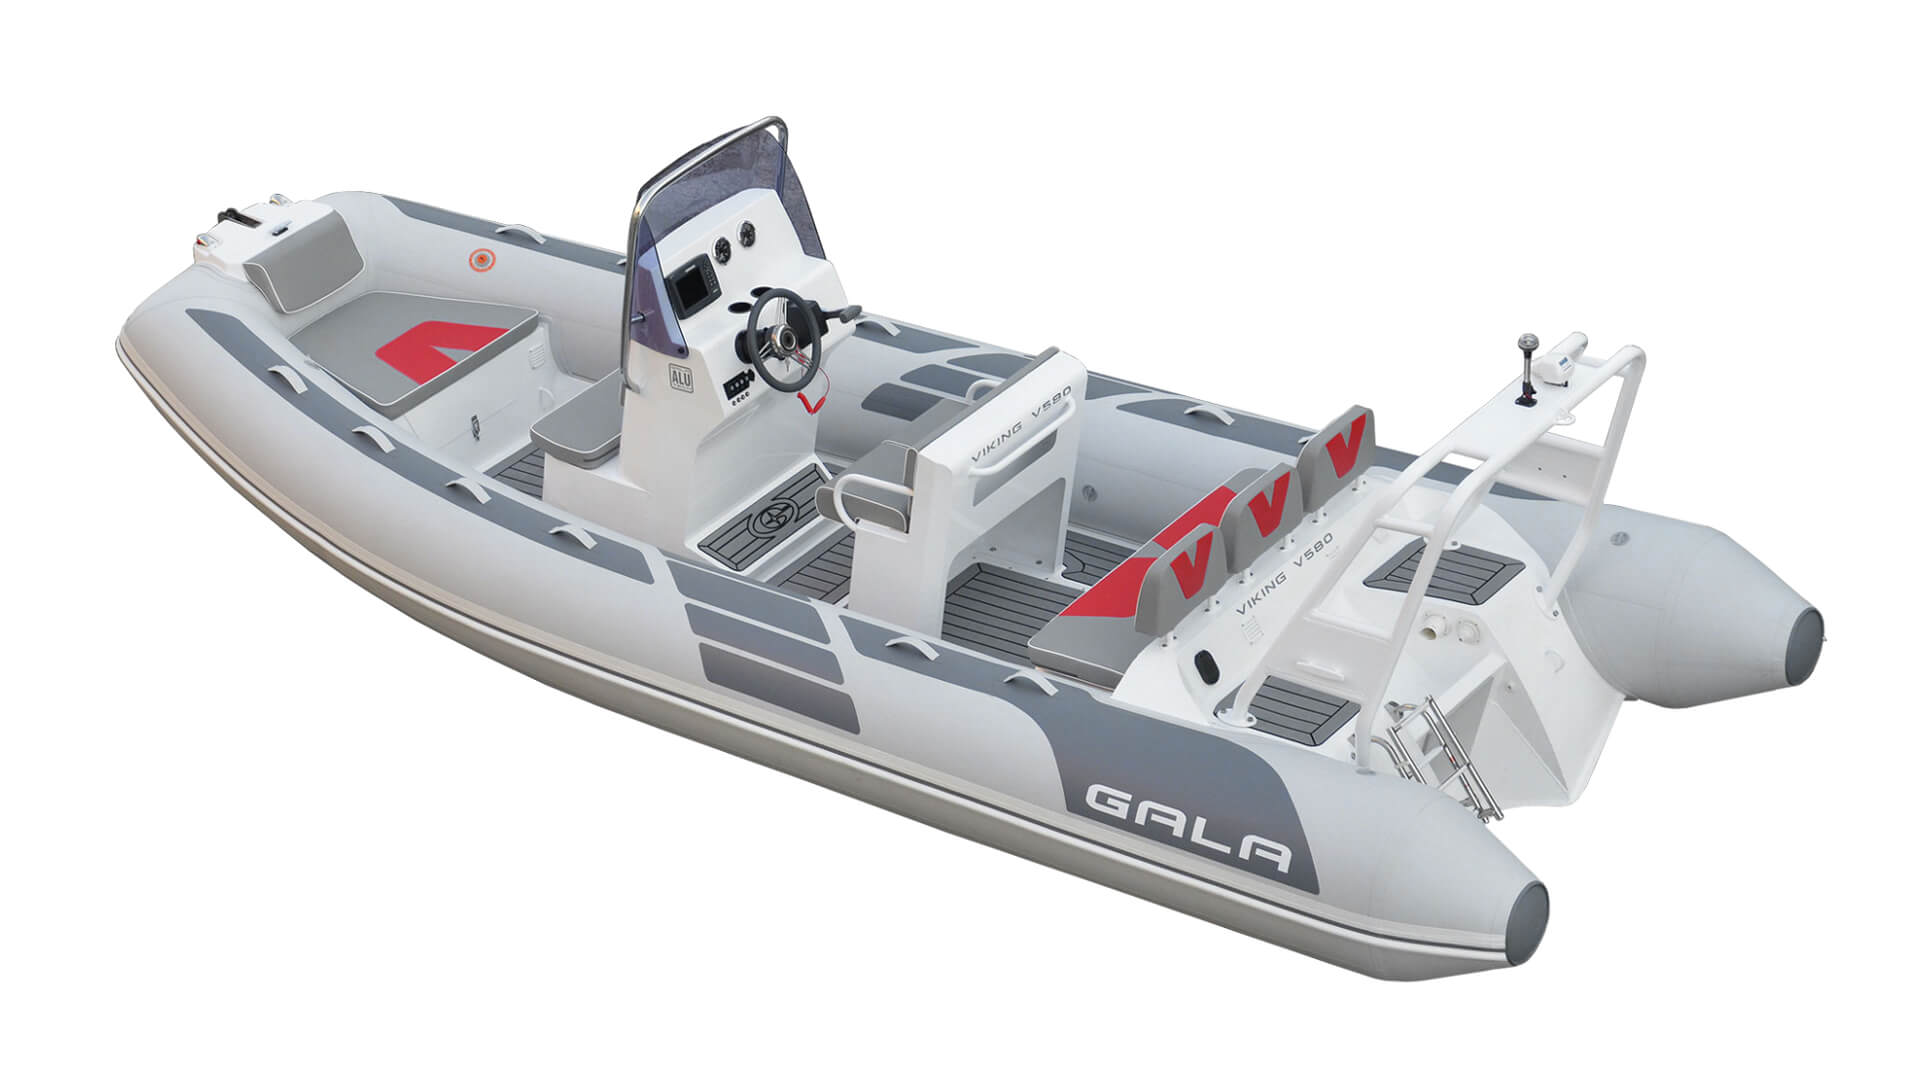 Надувная лодка с жестким алюминиевым дном GALA Viking V580, Надувная лодка с жестким дном GALA Viking V580, Надувная лодка с жестким дном GALA V580, Надувная лодка GALA V580, Надувная лодка GALA V580, GALA V580, лодка с жестким дном, алюминиевый риб, алюминиевый RIB, RIB